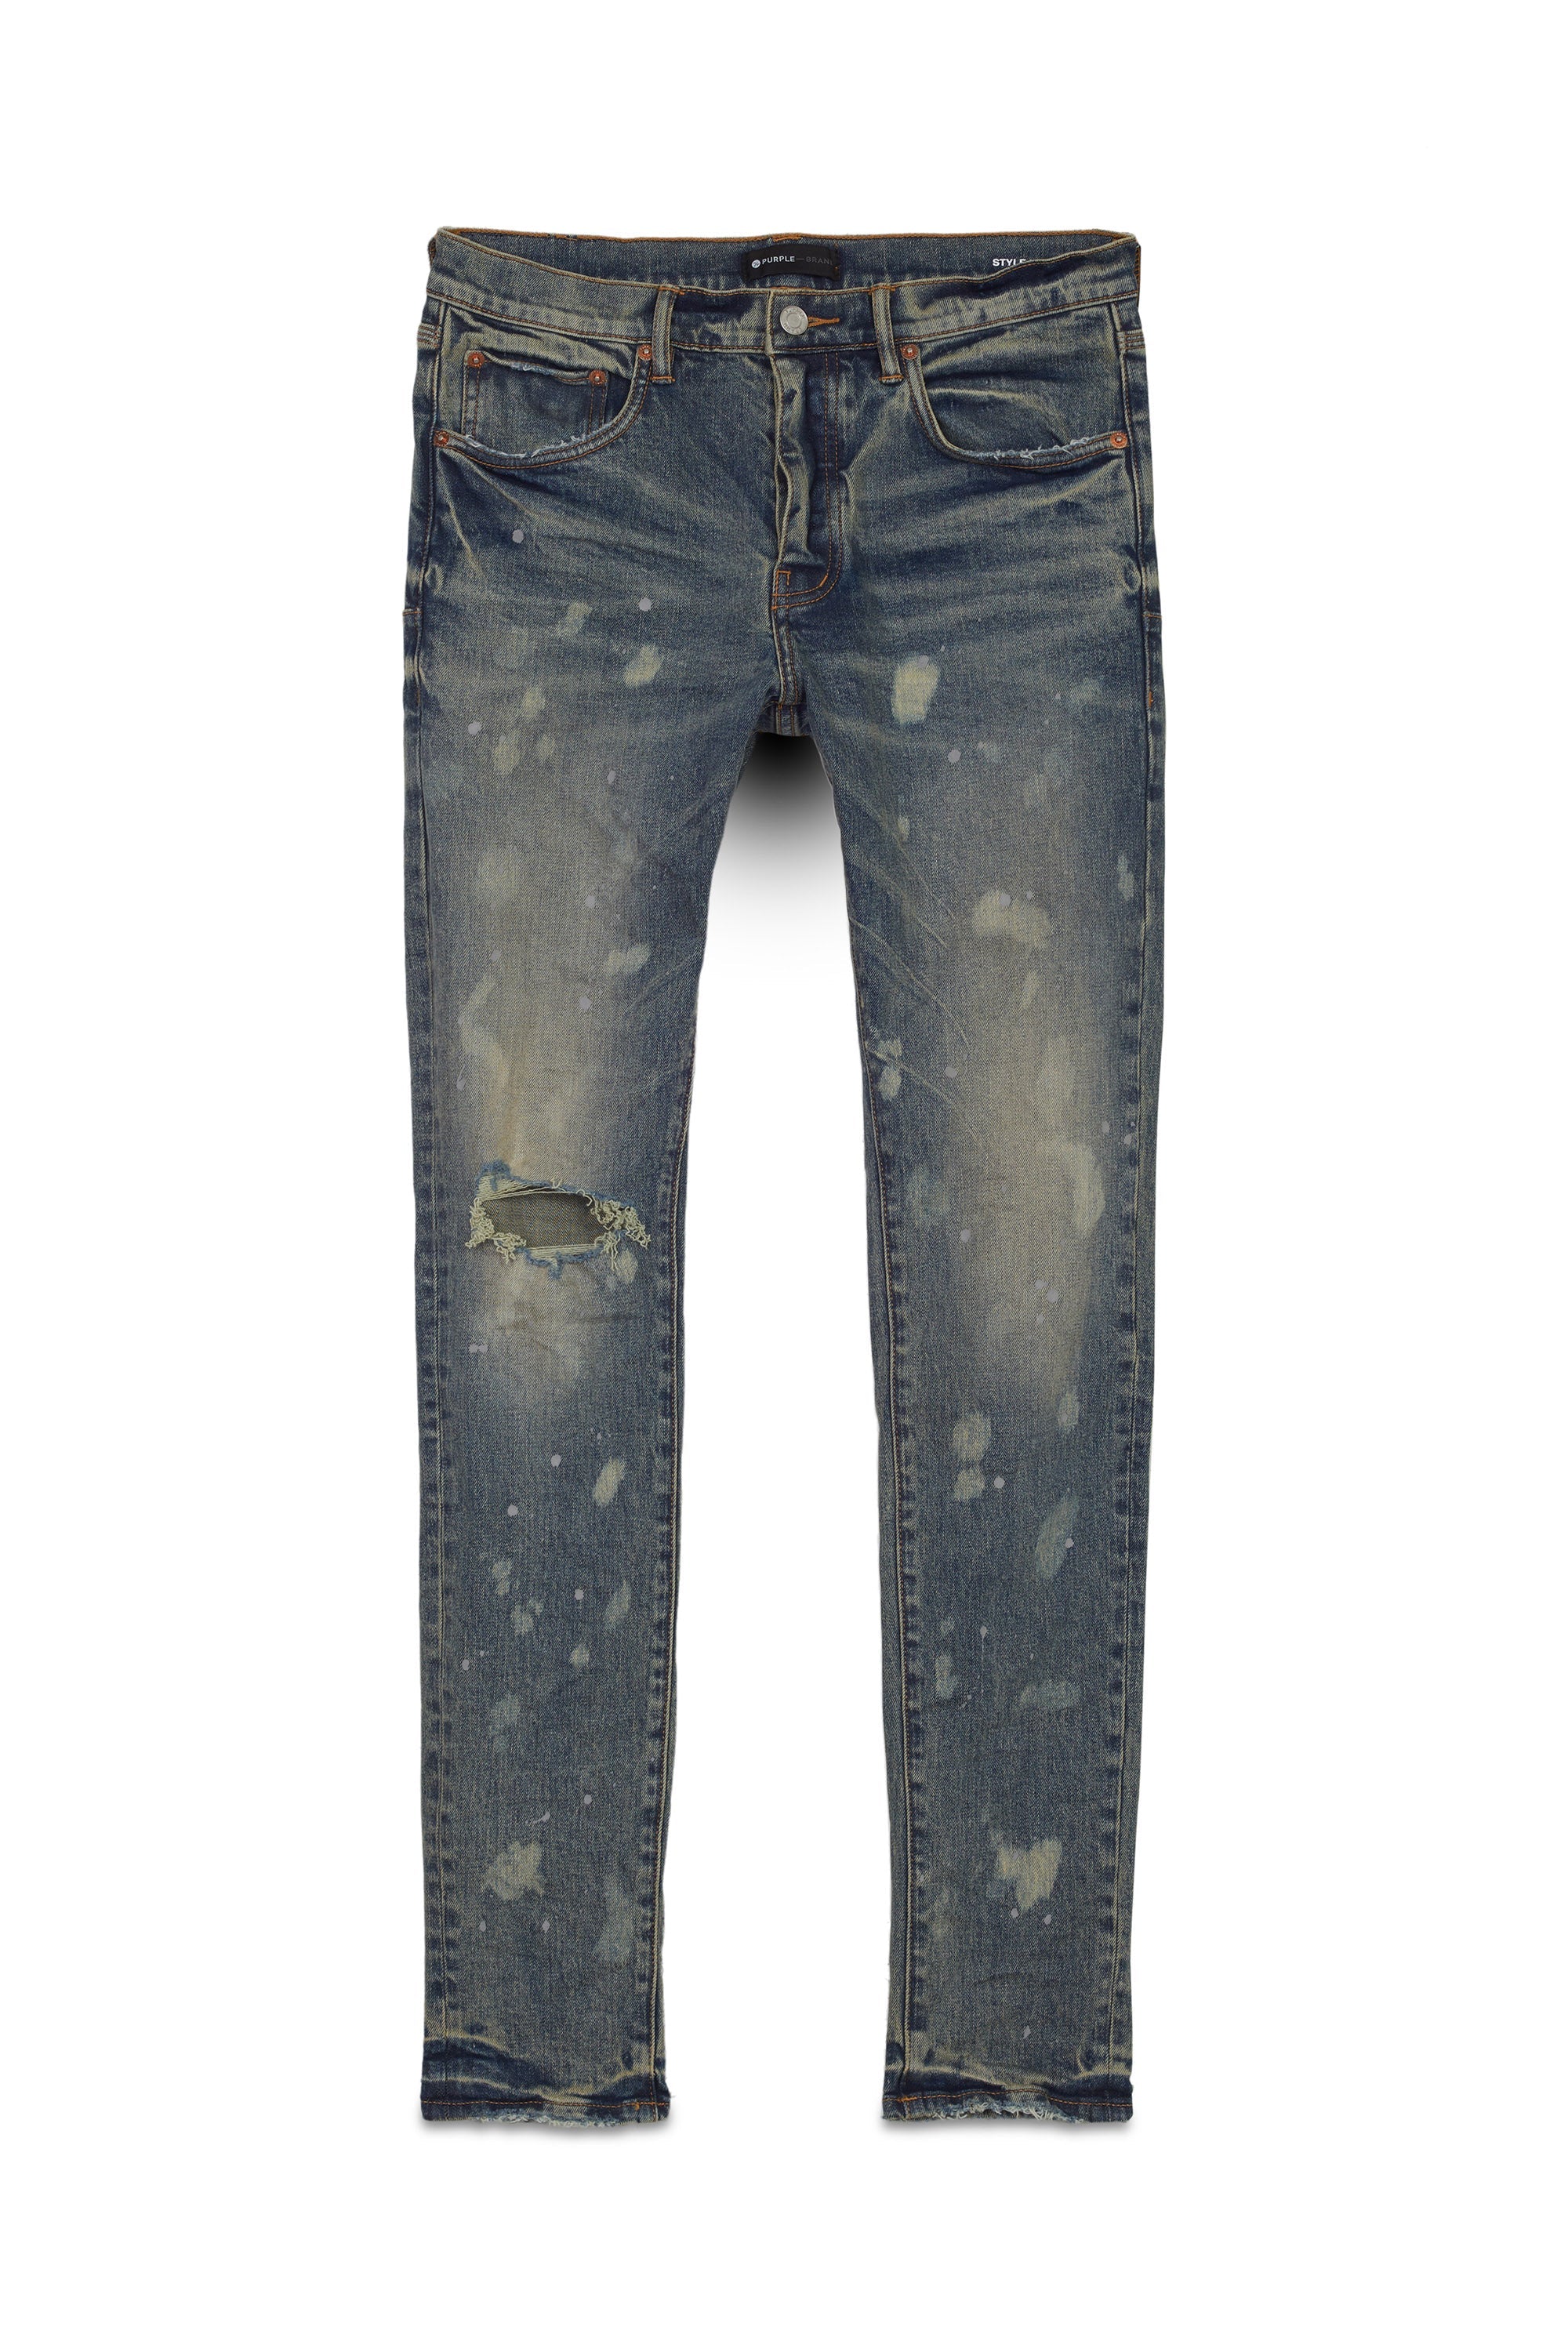 Purple Brand Jeans Mens Slim Fit Low Rise P001 Blue $295 Size 36